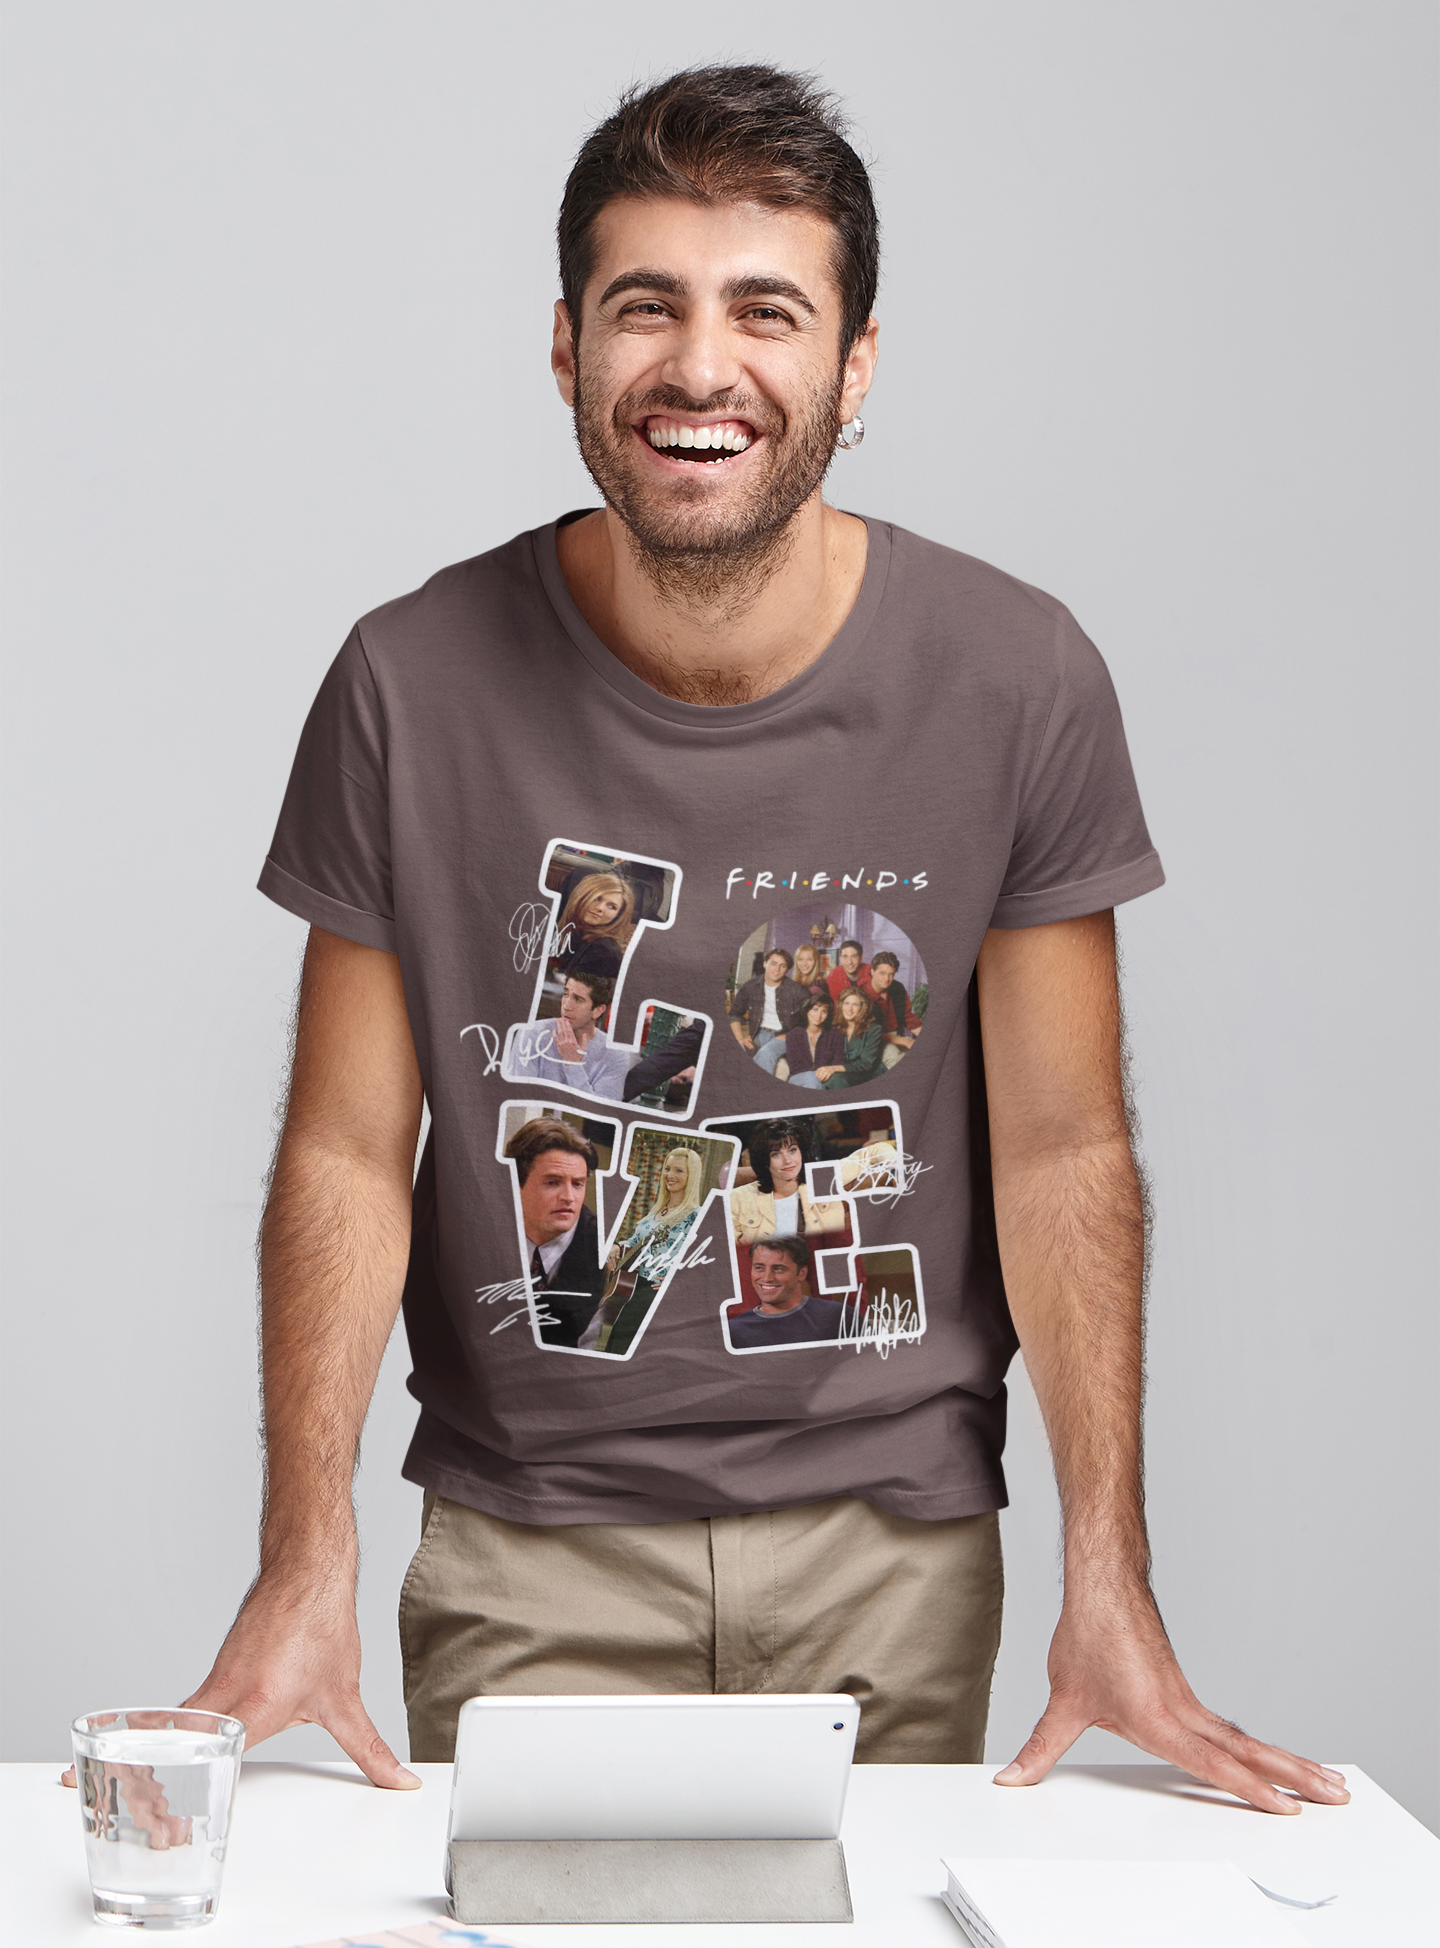 Friends TV Show T Shirt, Friends Shirt, Friends Characters Signature T Shirt, Friends Love Tshirt